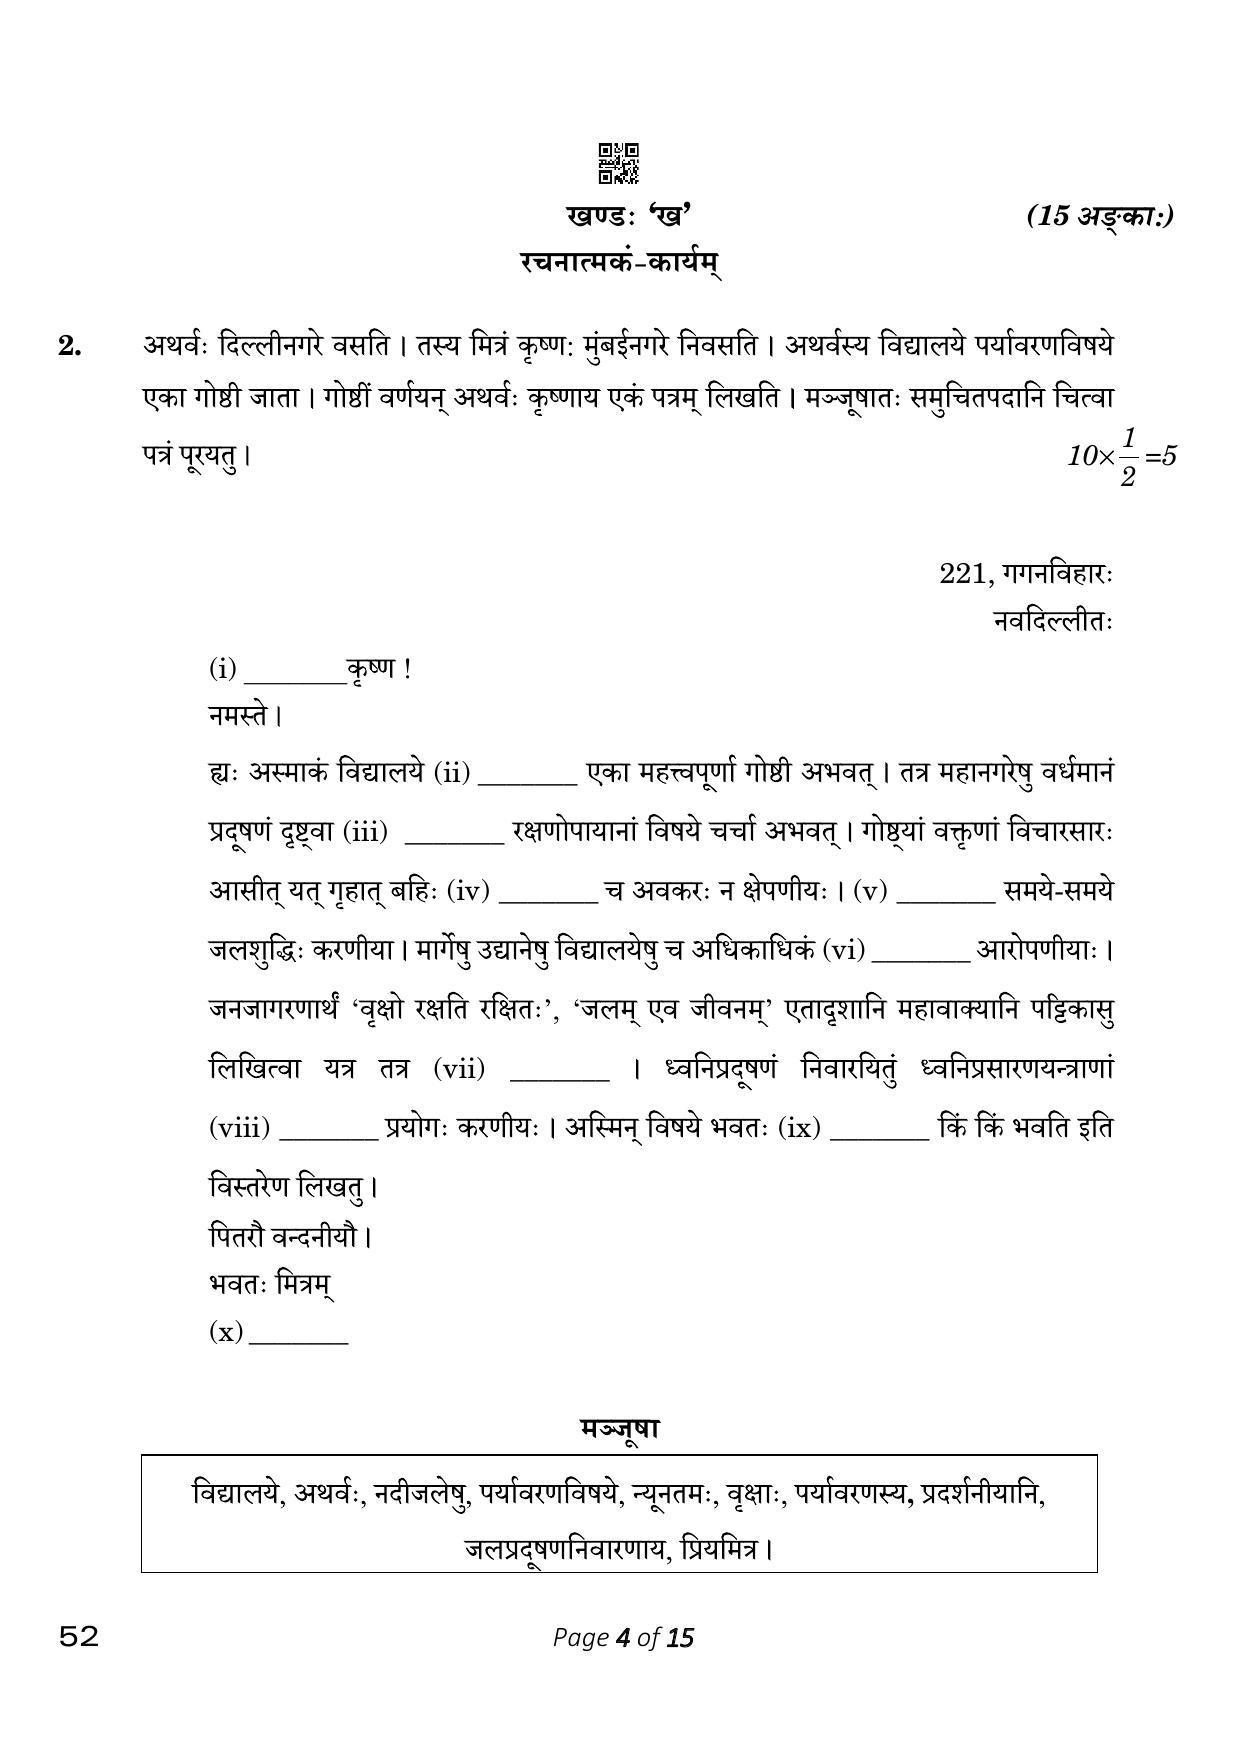 CBSE Class 10 Sanskrit (Compartment) 2023 Question Paper - Page 4